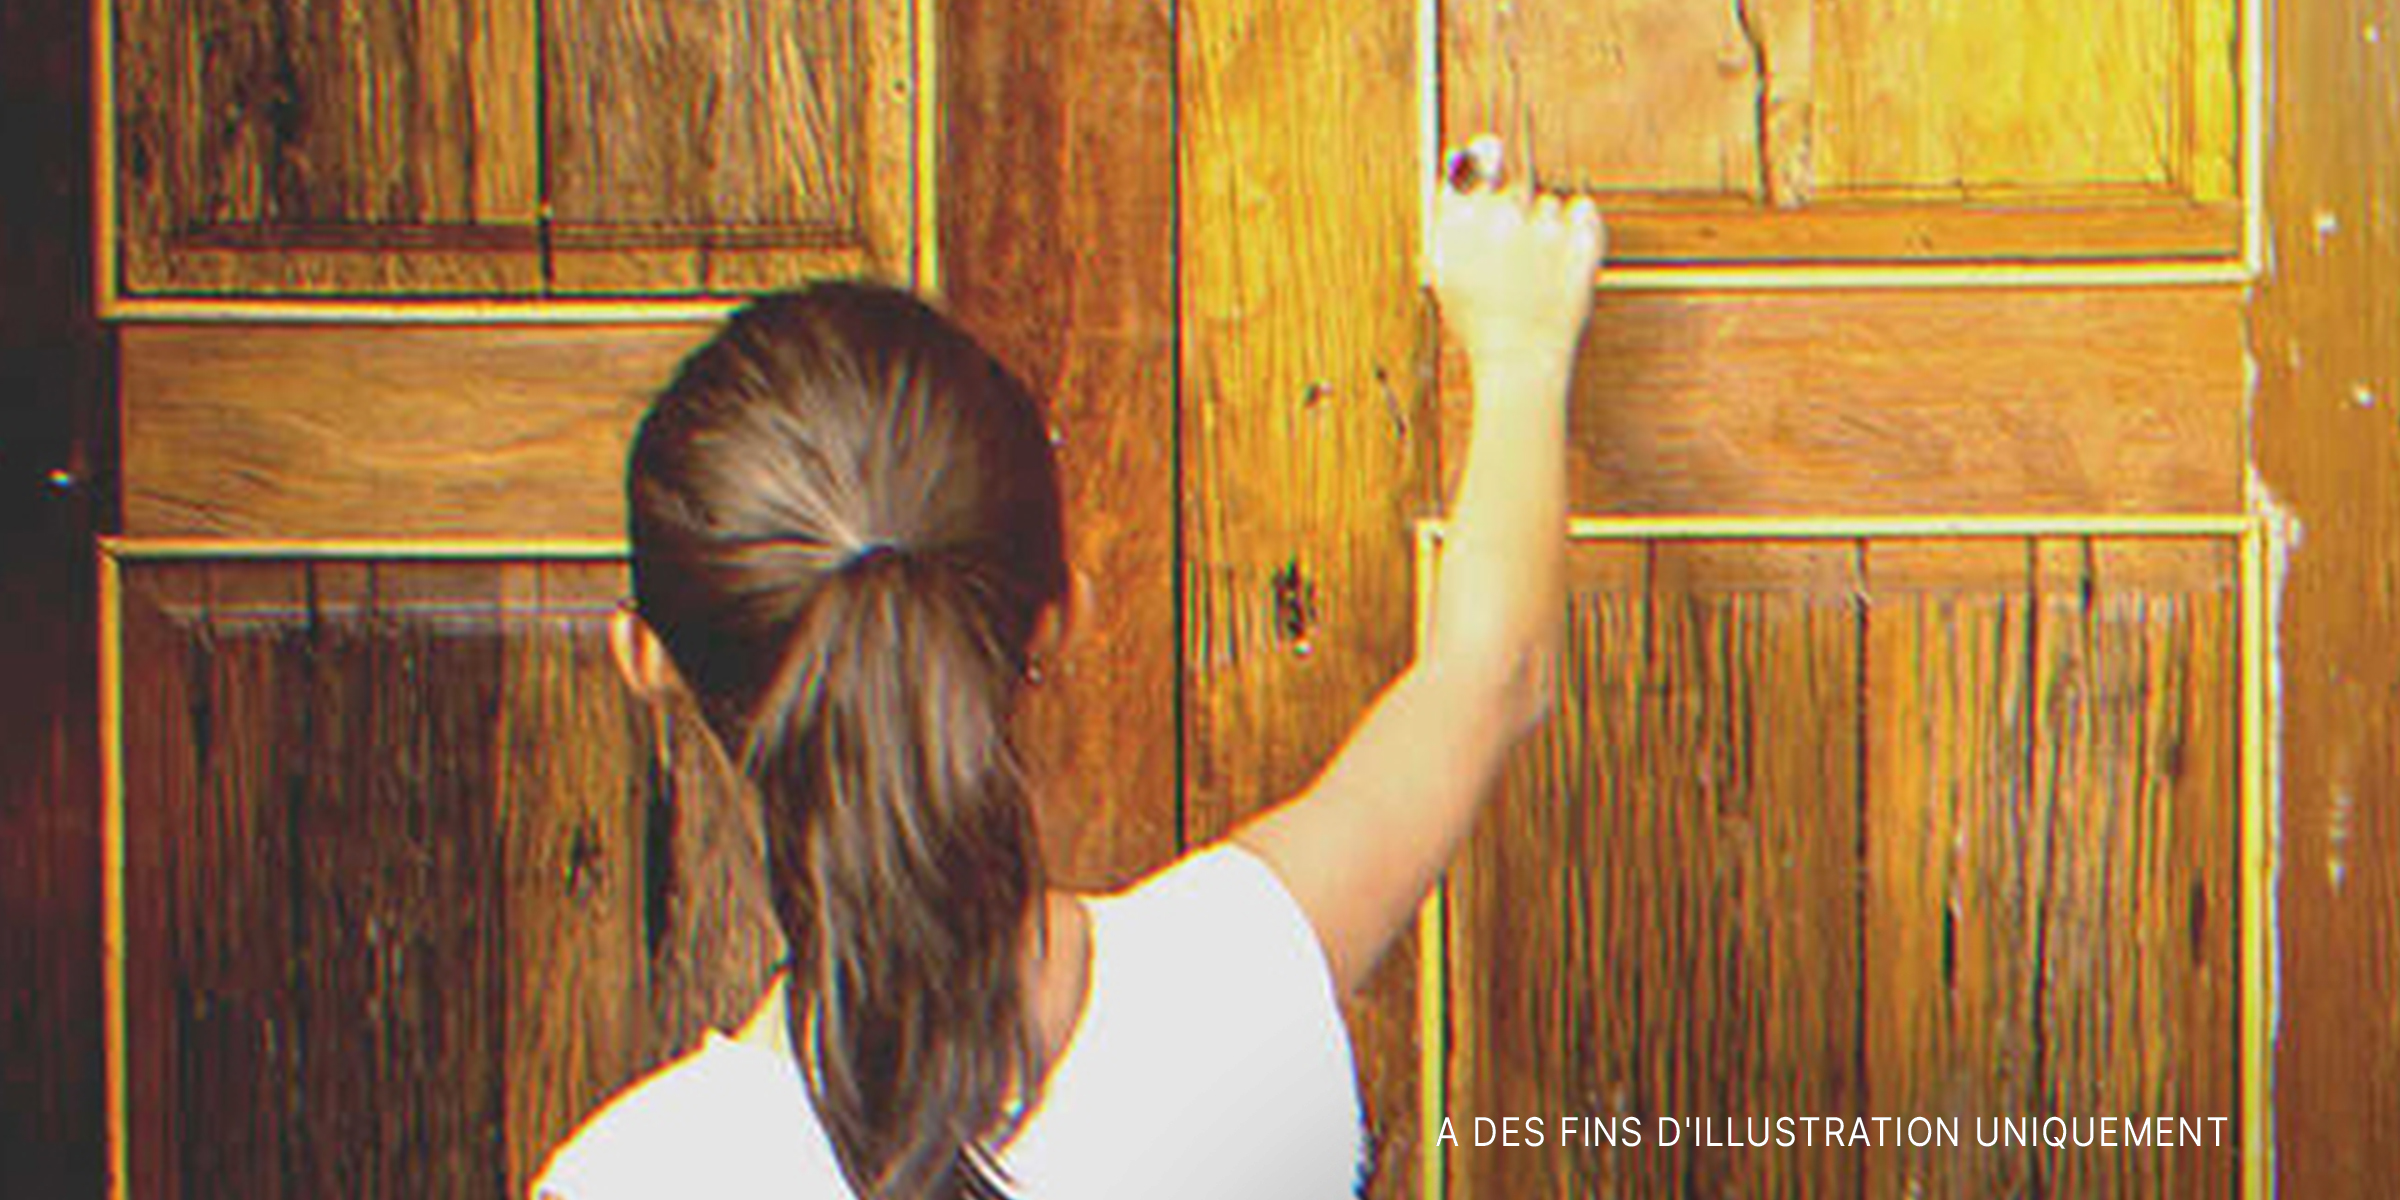 Une petite fille frappant à une porte | Source : Shutterstock